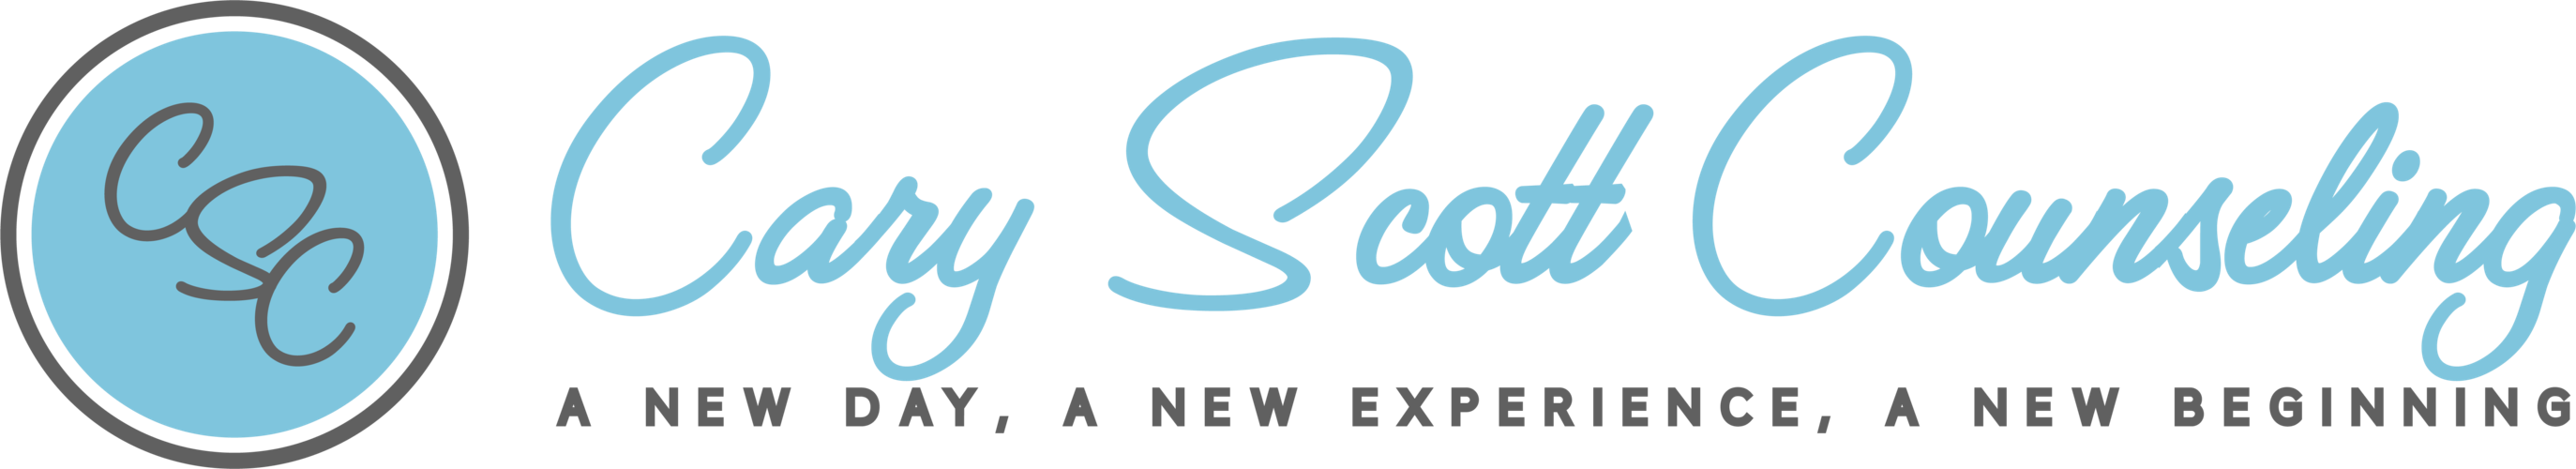 Cary Scott Logo